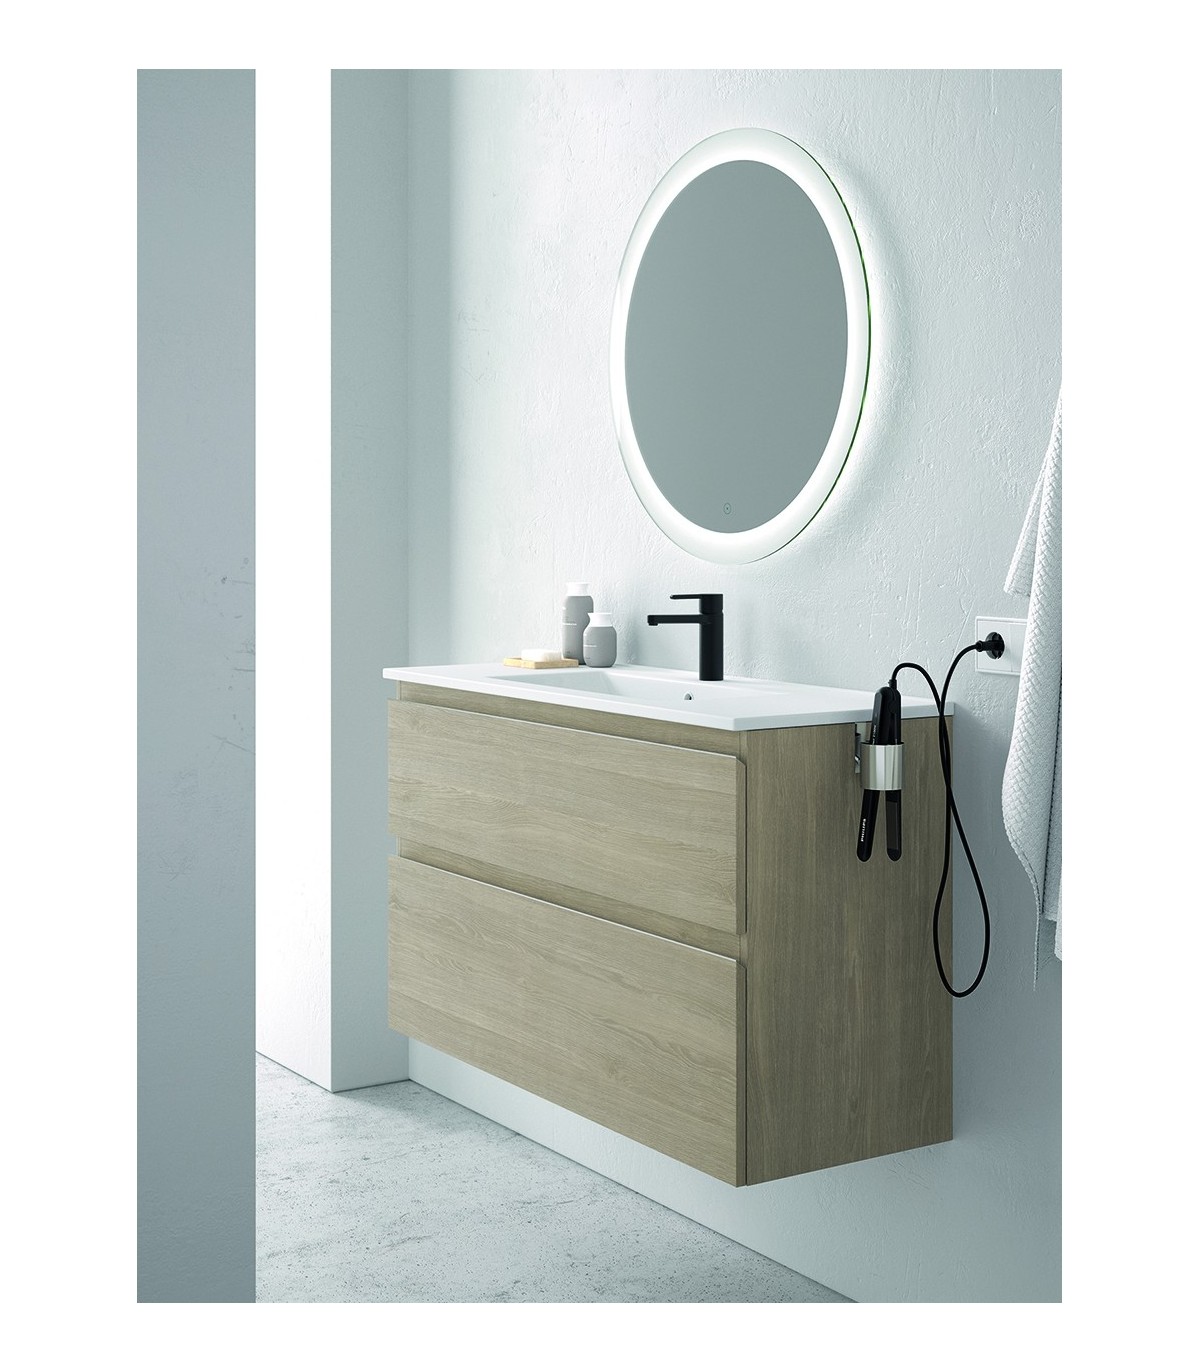 Mueble de baño MIKA. Blanco Brillo Incluye lavabo cerámico y espejo.